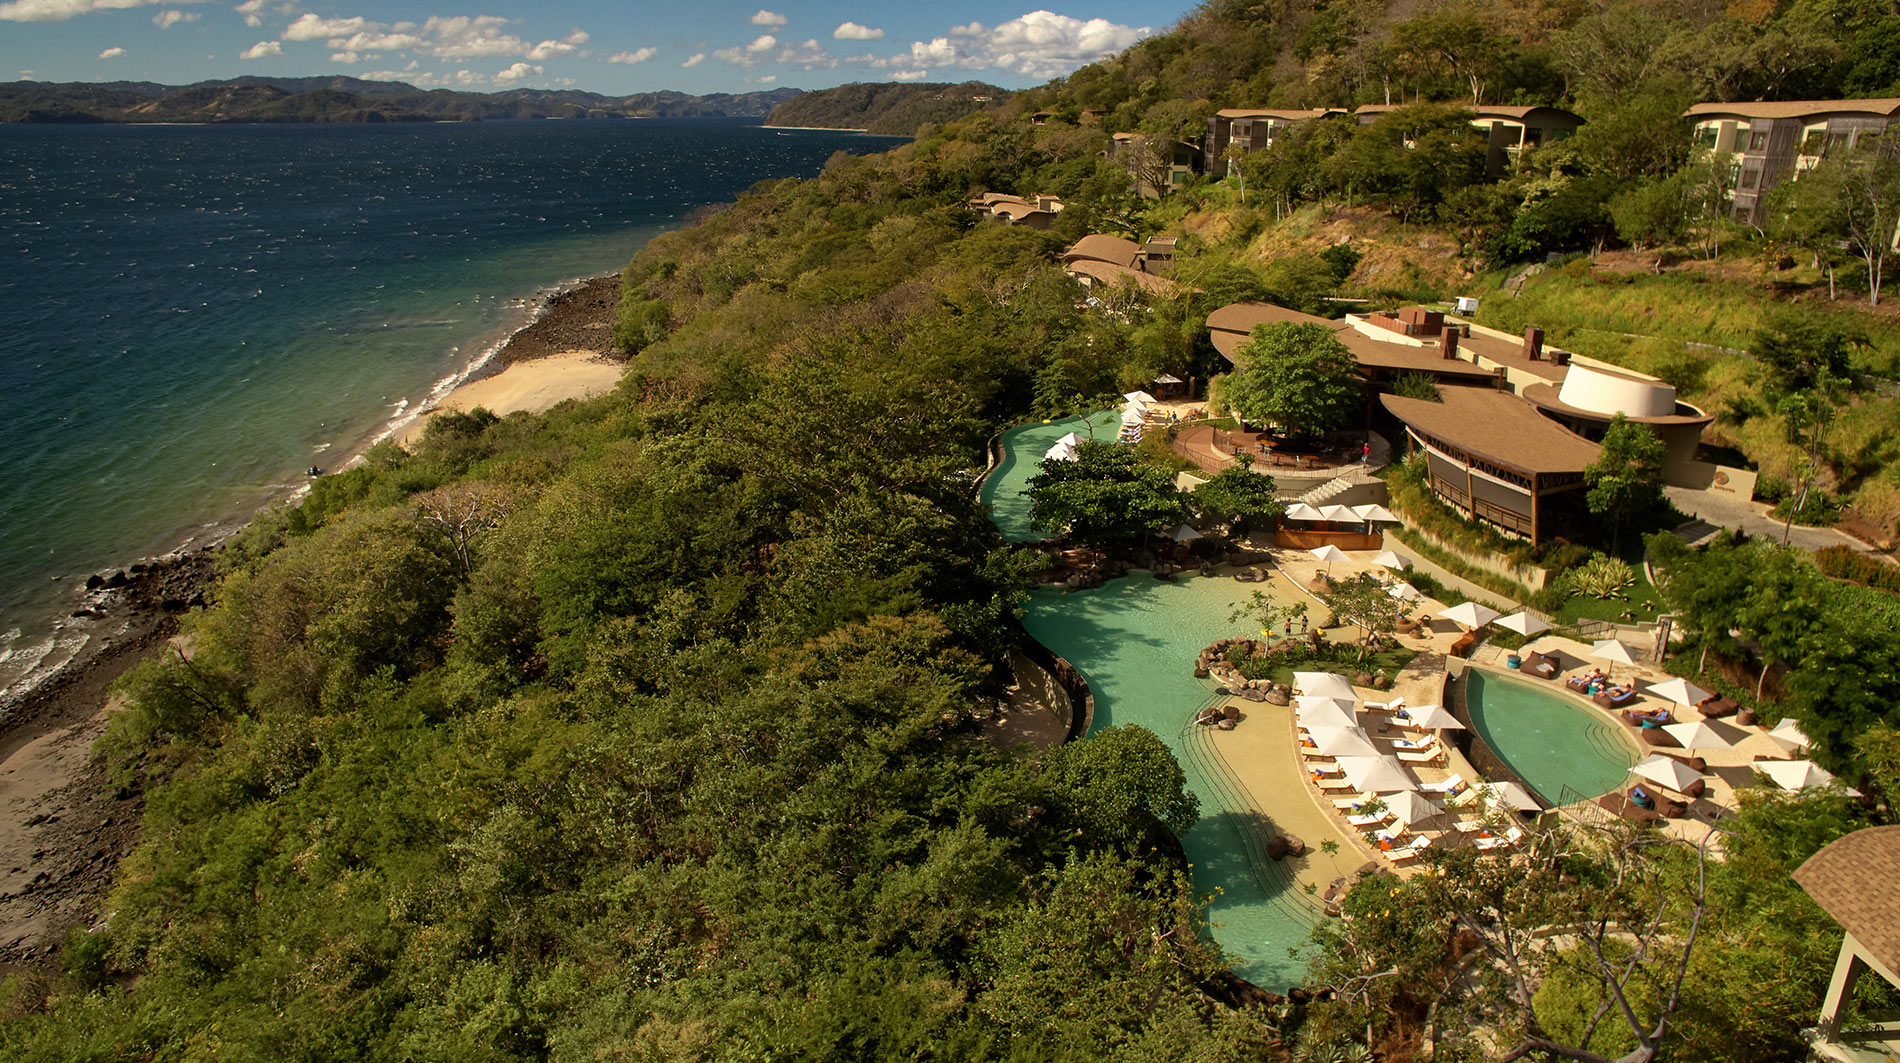 Andaz Costa Rica Resort at Peninsula Papagayo Costa Rica Hotels